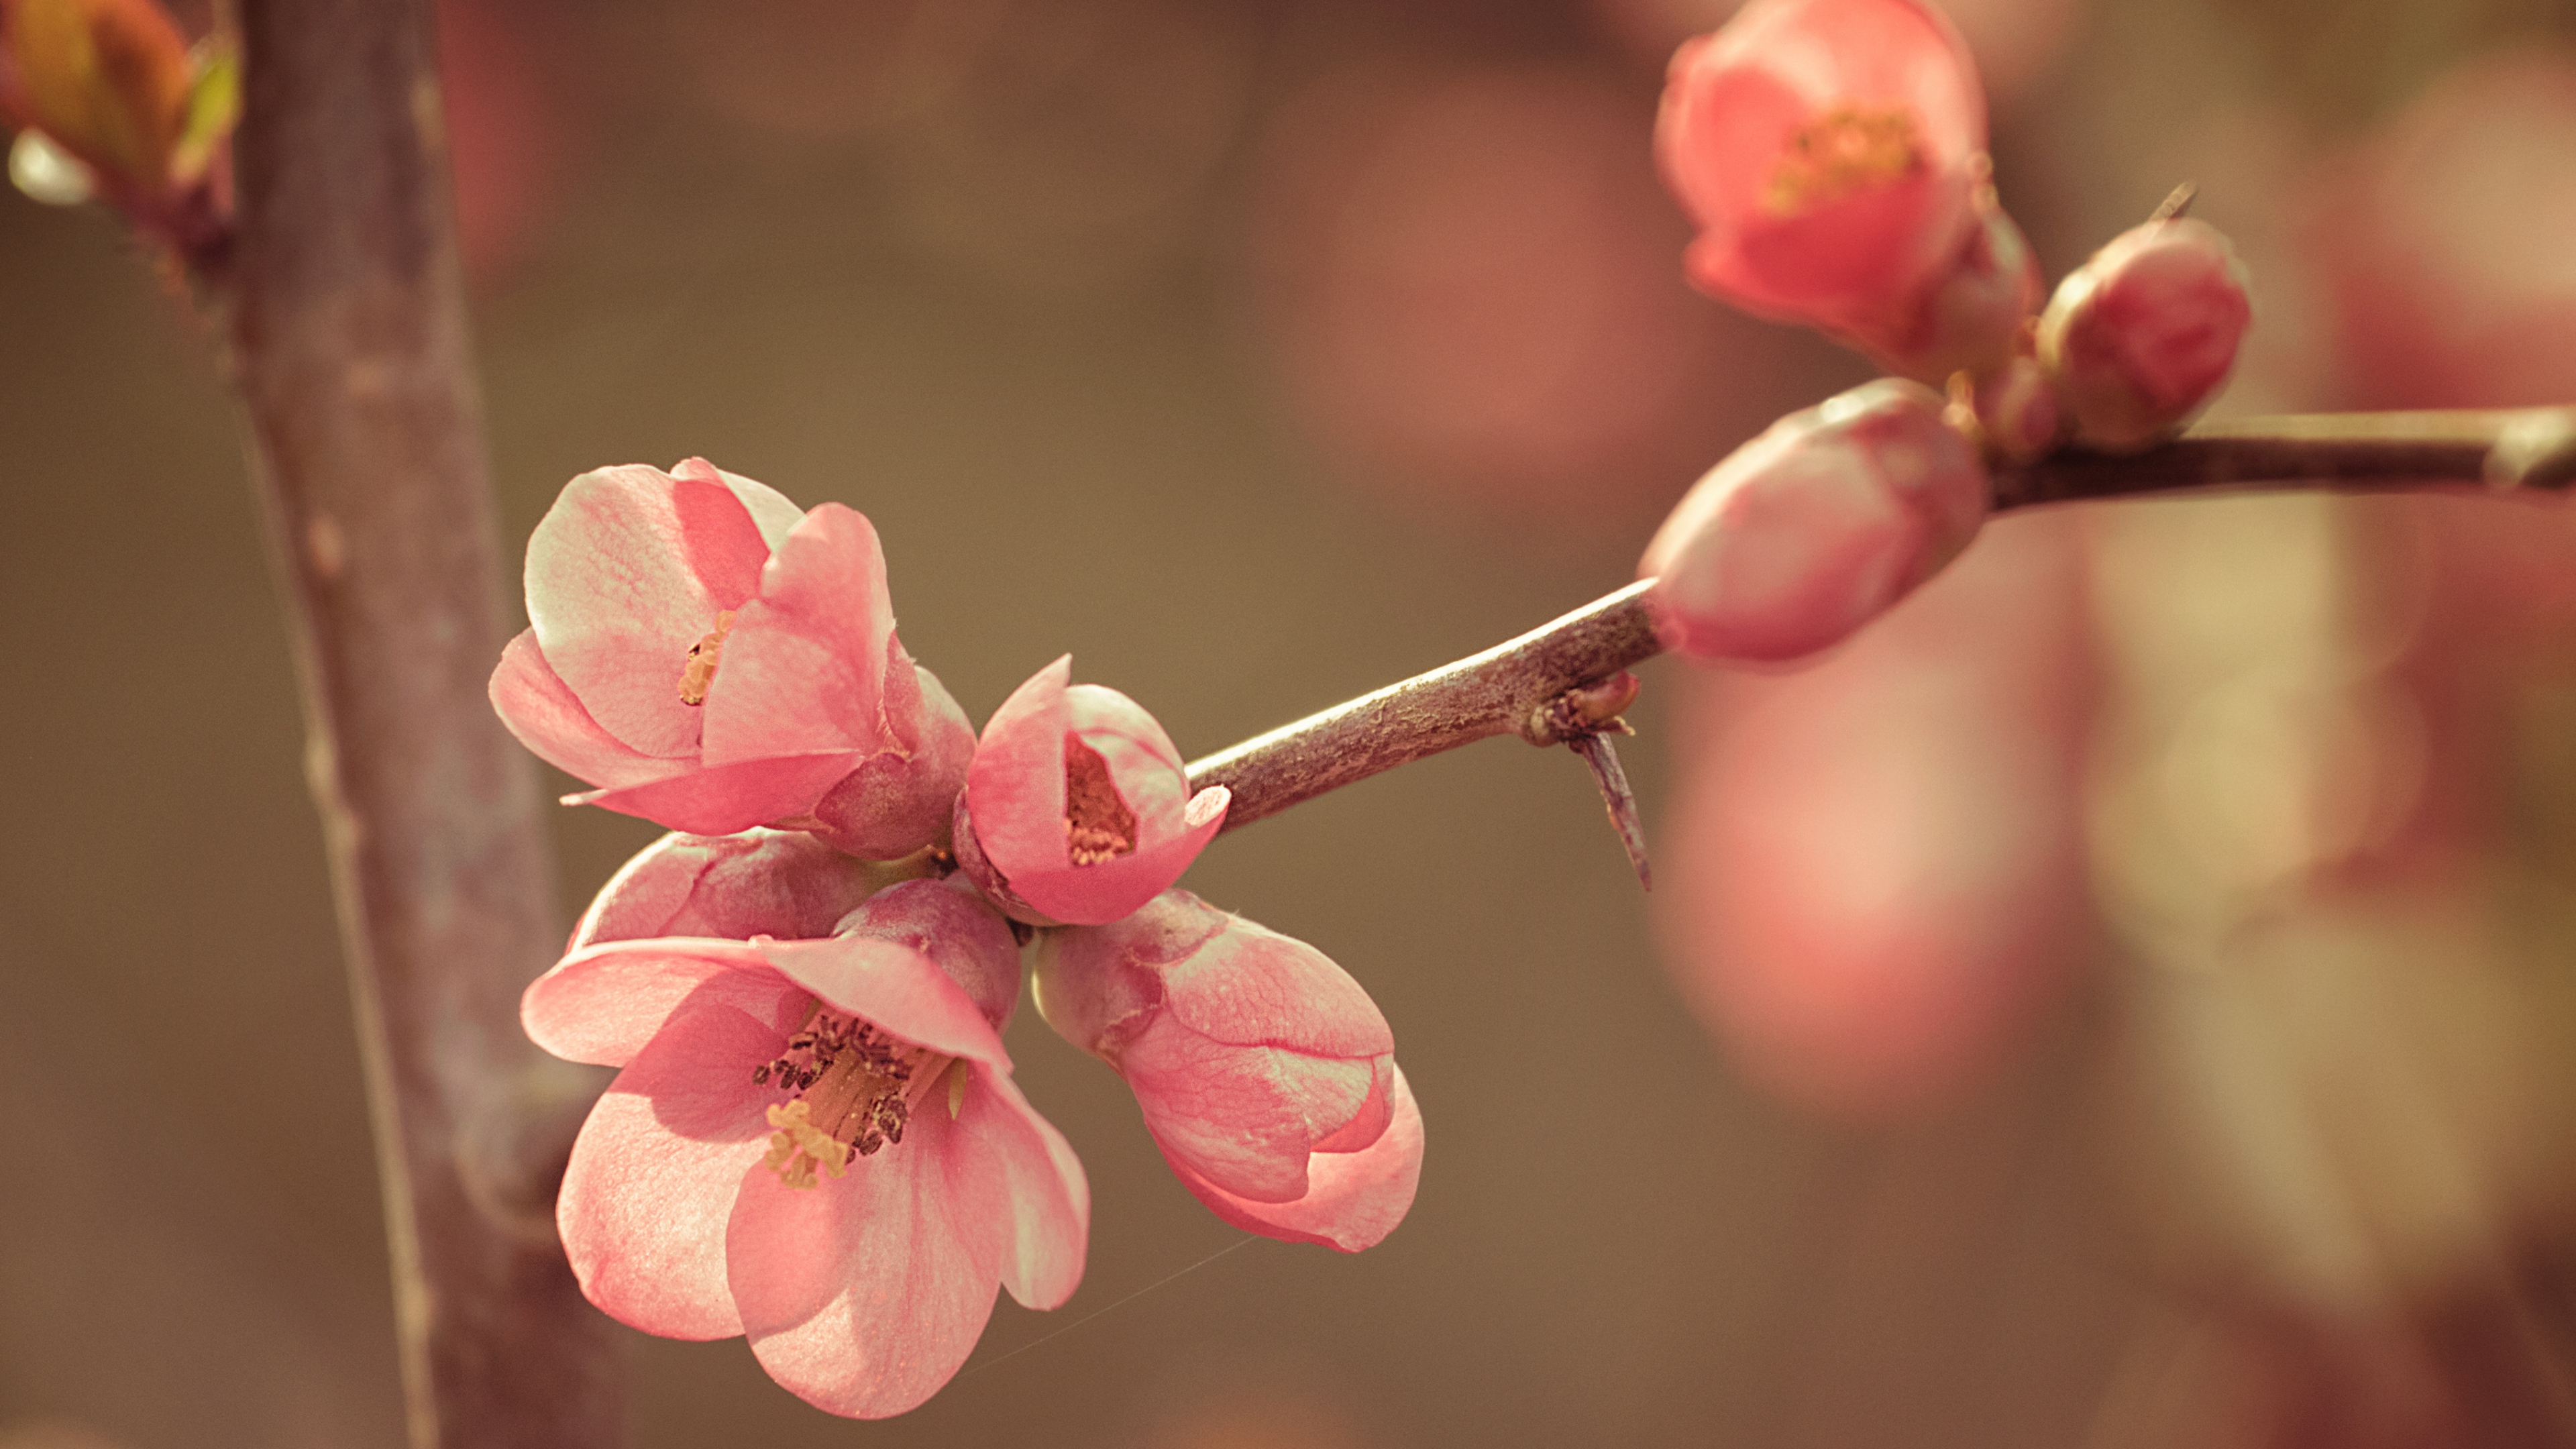 樱花, 粉红色, 弹簧, 开花, 树枝 壁纸 3840x2160 允许